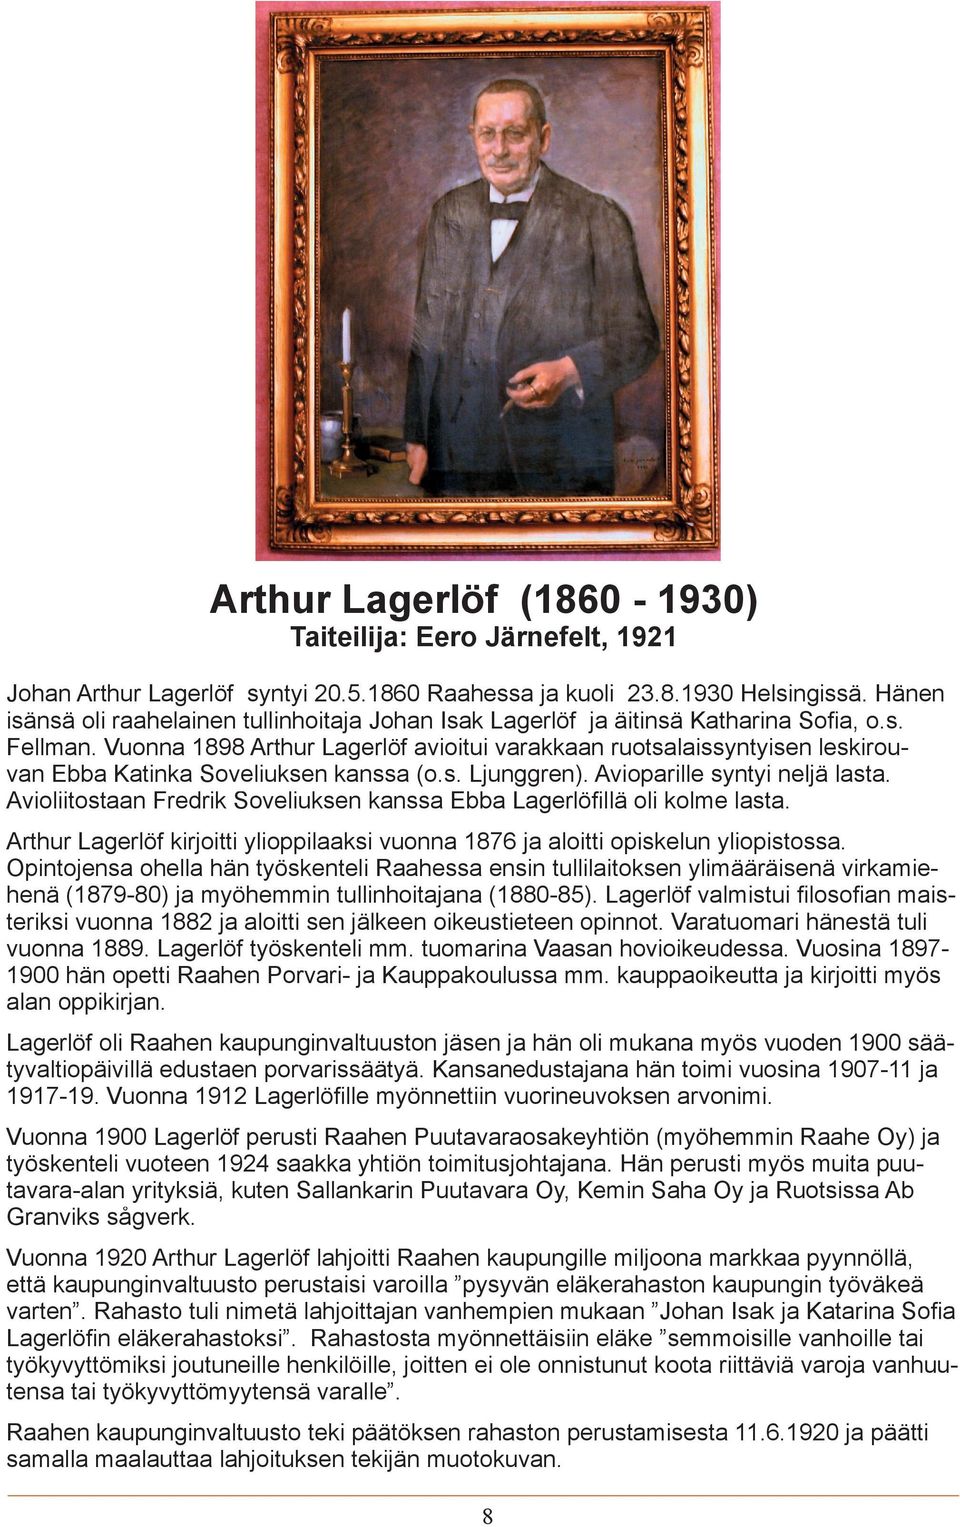 Vuonna 1898 Arthur Lagerlöf avioitui varakkaan ruotsalaissyntyisen leskirouvan Ebba Katinka Soveliuksen kanssa (o.s. Ljunggren). Avioparille syntyi neljä lasta.